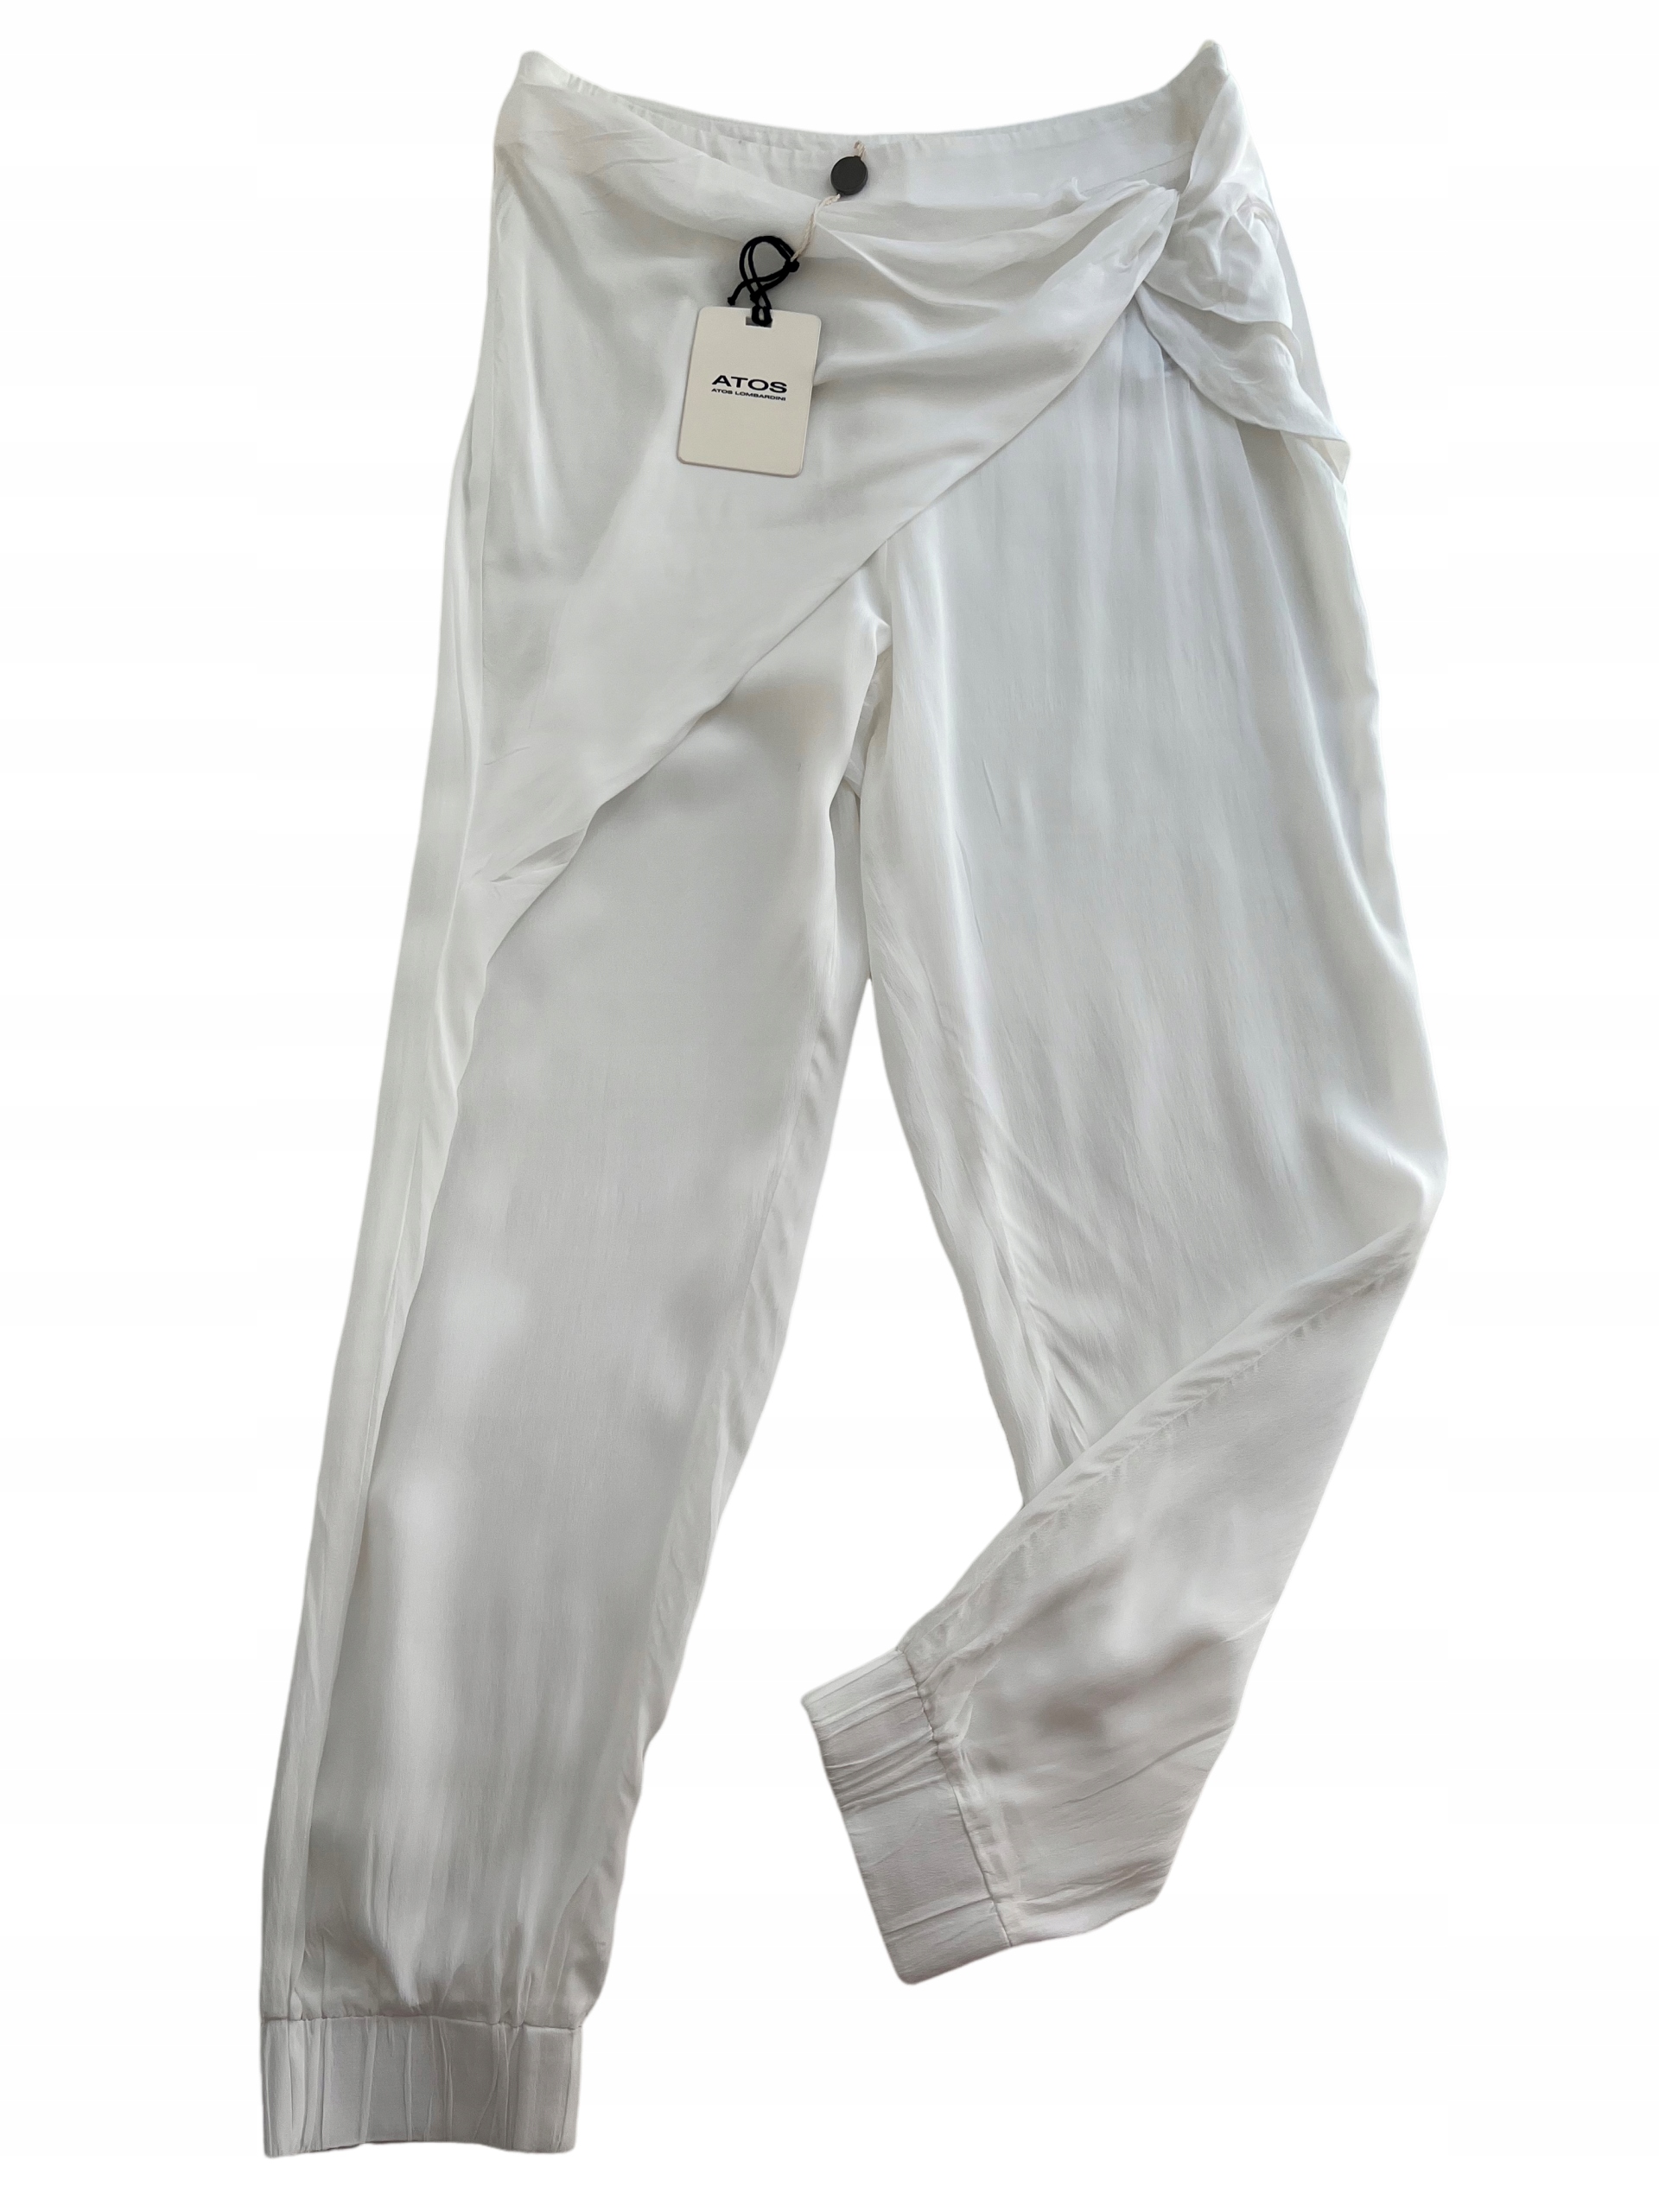 biele letné hodvábne nohavice ATOS LOMBARDINI veľ. S/M